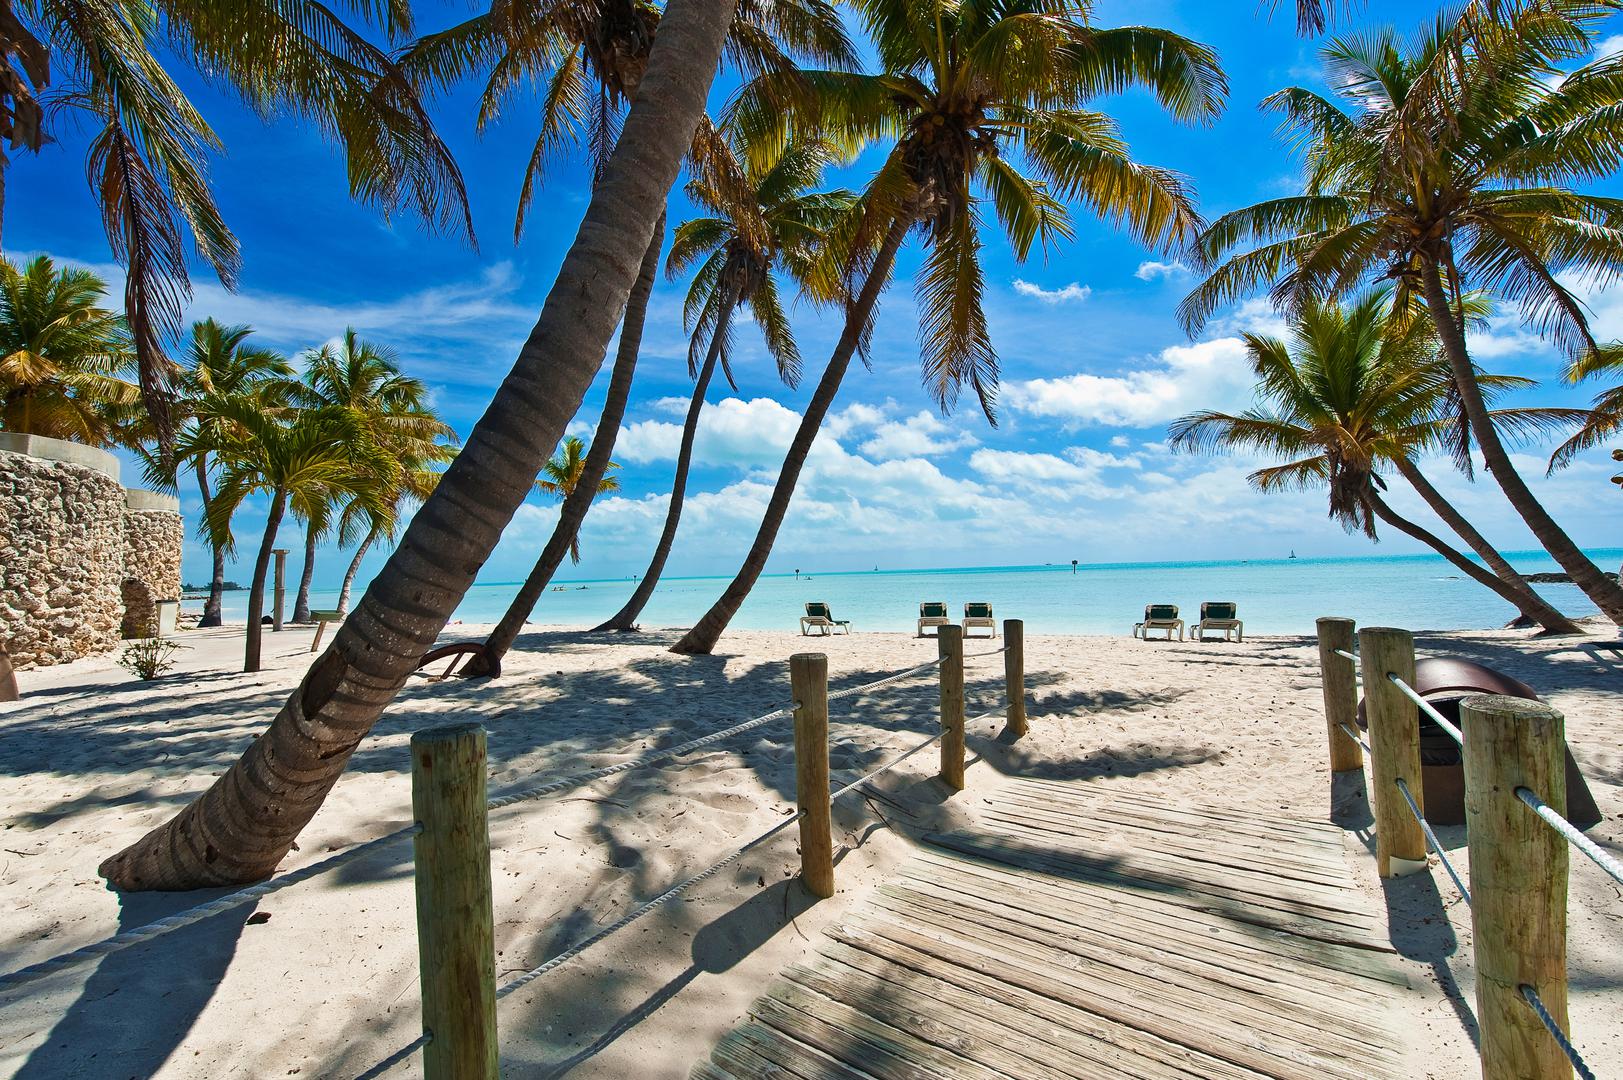 Key West, Florida: Grad Key West na Floridi izglasao je zabranu prodaje štetnih krema za sunčanje 2019. kako bi zaštitio svoje grebene. U kontroverznom potezu, guverner Floride ukinuo je zabranu 2020. godine, čime je postala neslužbena. Unatoč tome, Key West i dalje ostaje pri načelnom stavu protiv opasnih krema za sunčanje. Od javnosti se traži da vodi računa o sastojcima kreme za sunčanje i kako oni mogu utjecati na okoliš.